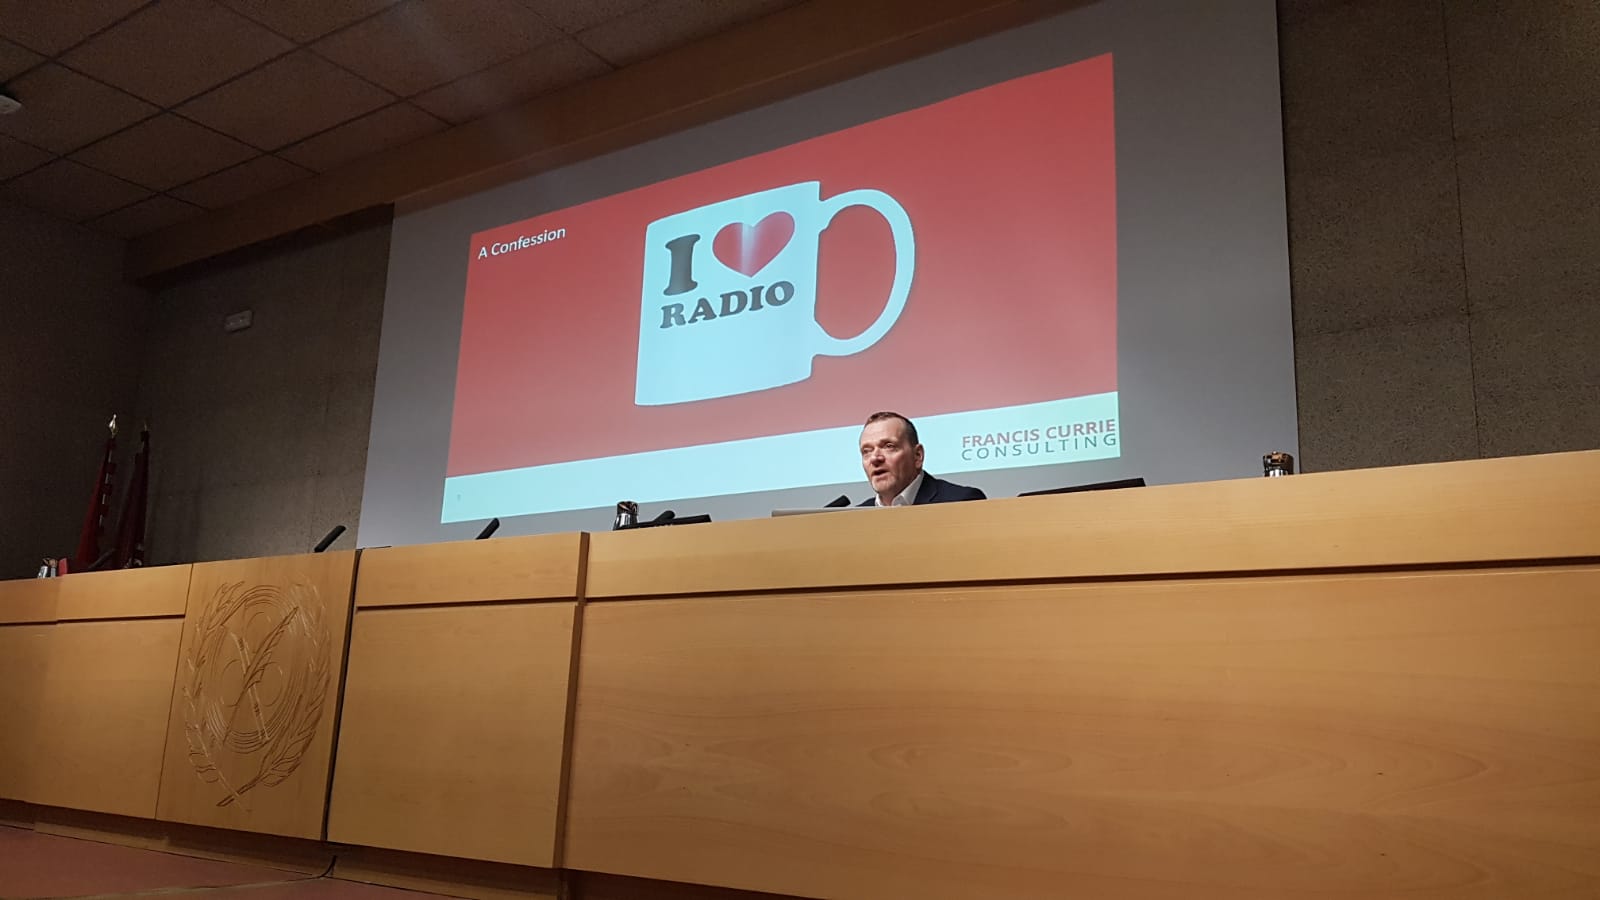 Expertos y estrellas de la radio abordan el futuro de la radiodifusión  - 6